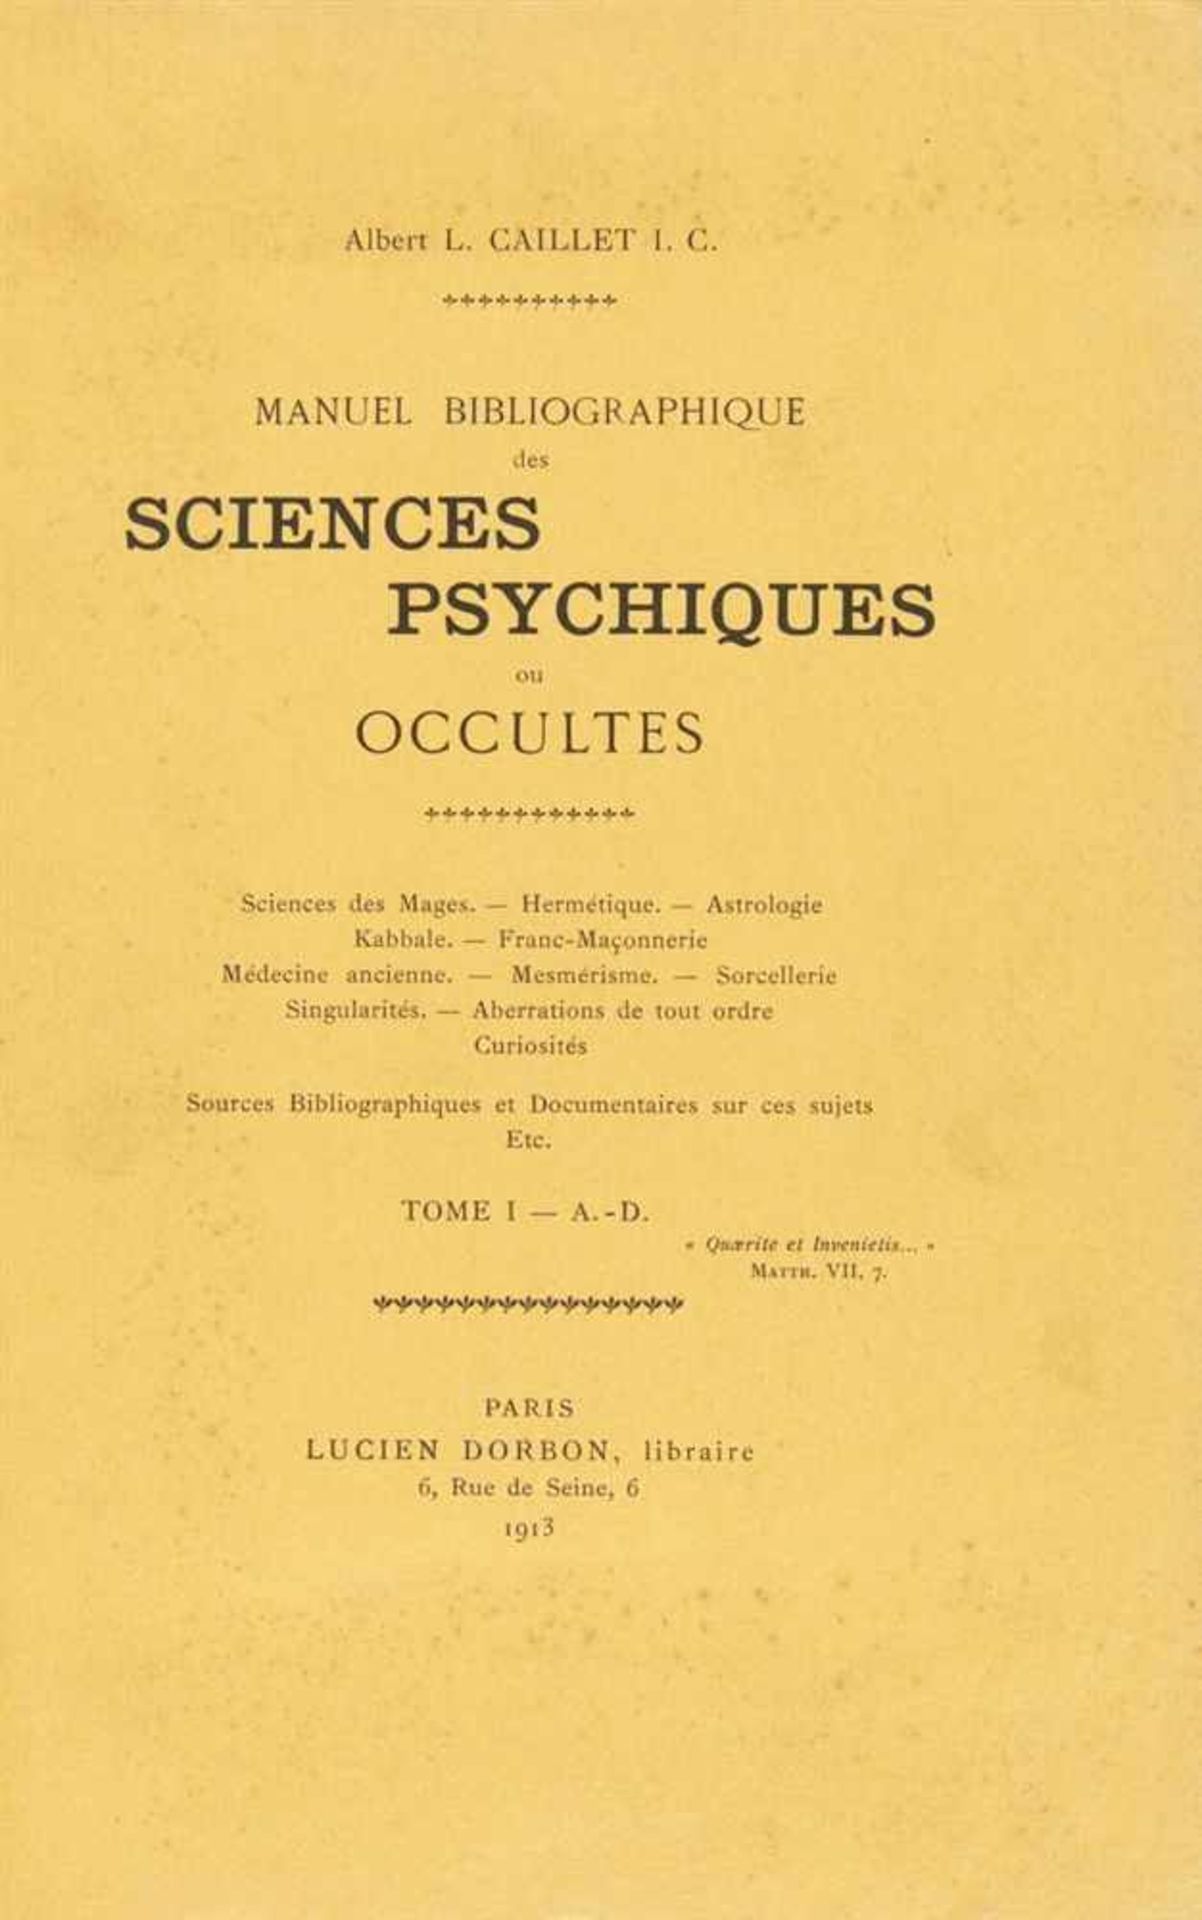 Caillet, Albert L.: Manuel bibliographique des sciences psychiques ou occultes. 3 Bde. Paris: Lucien